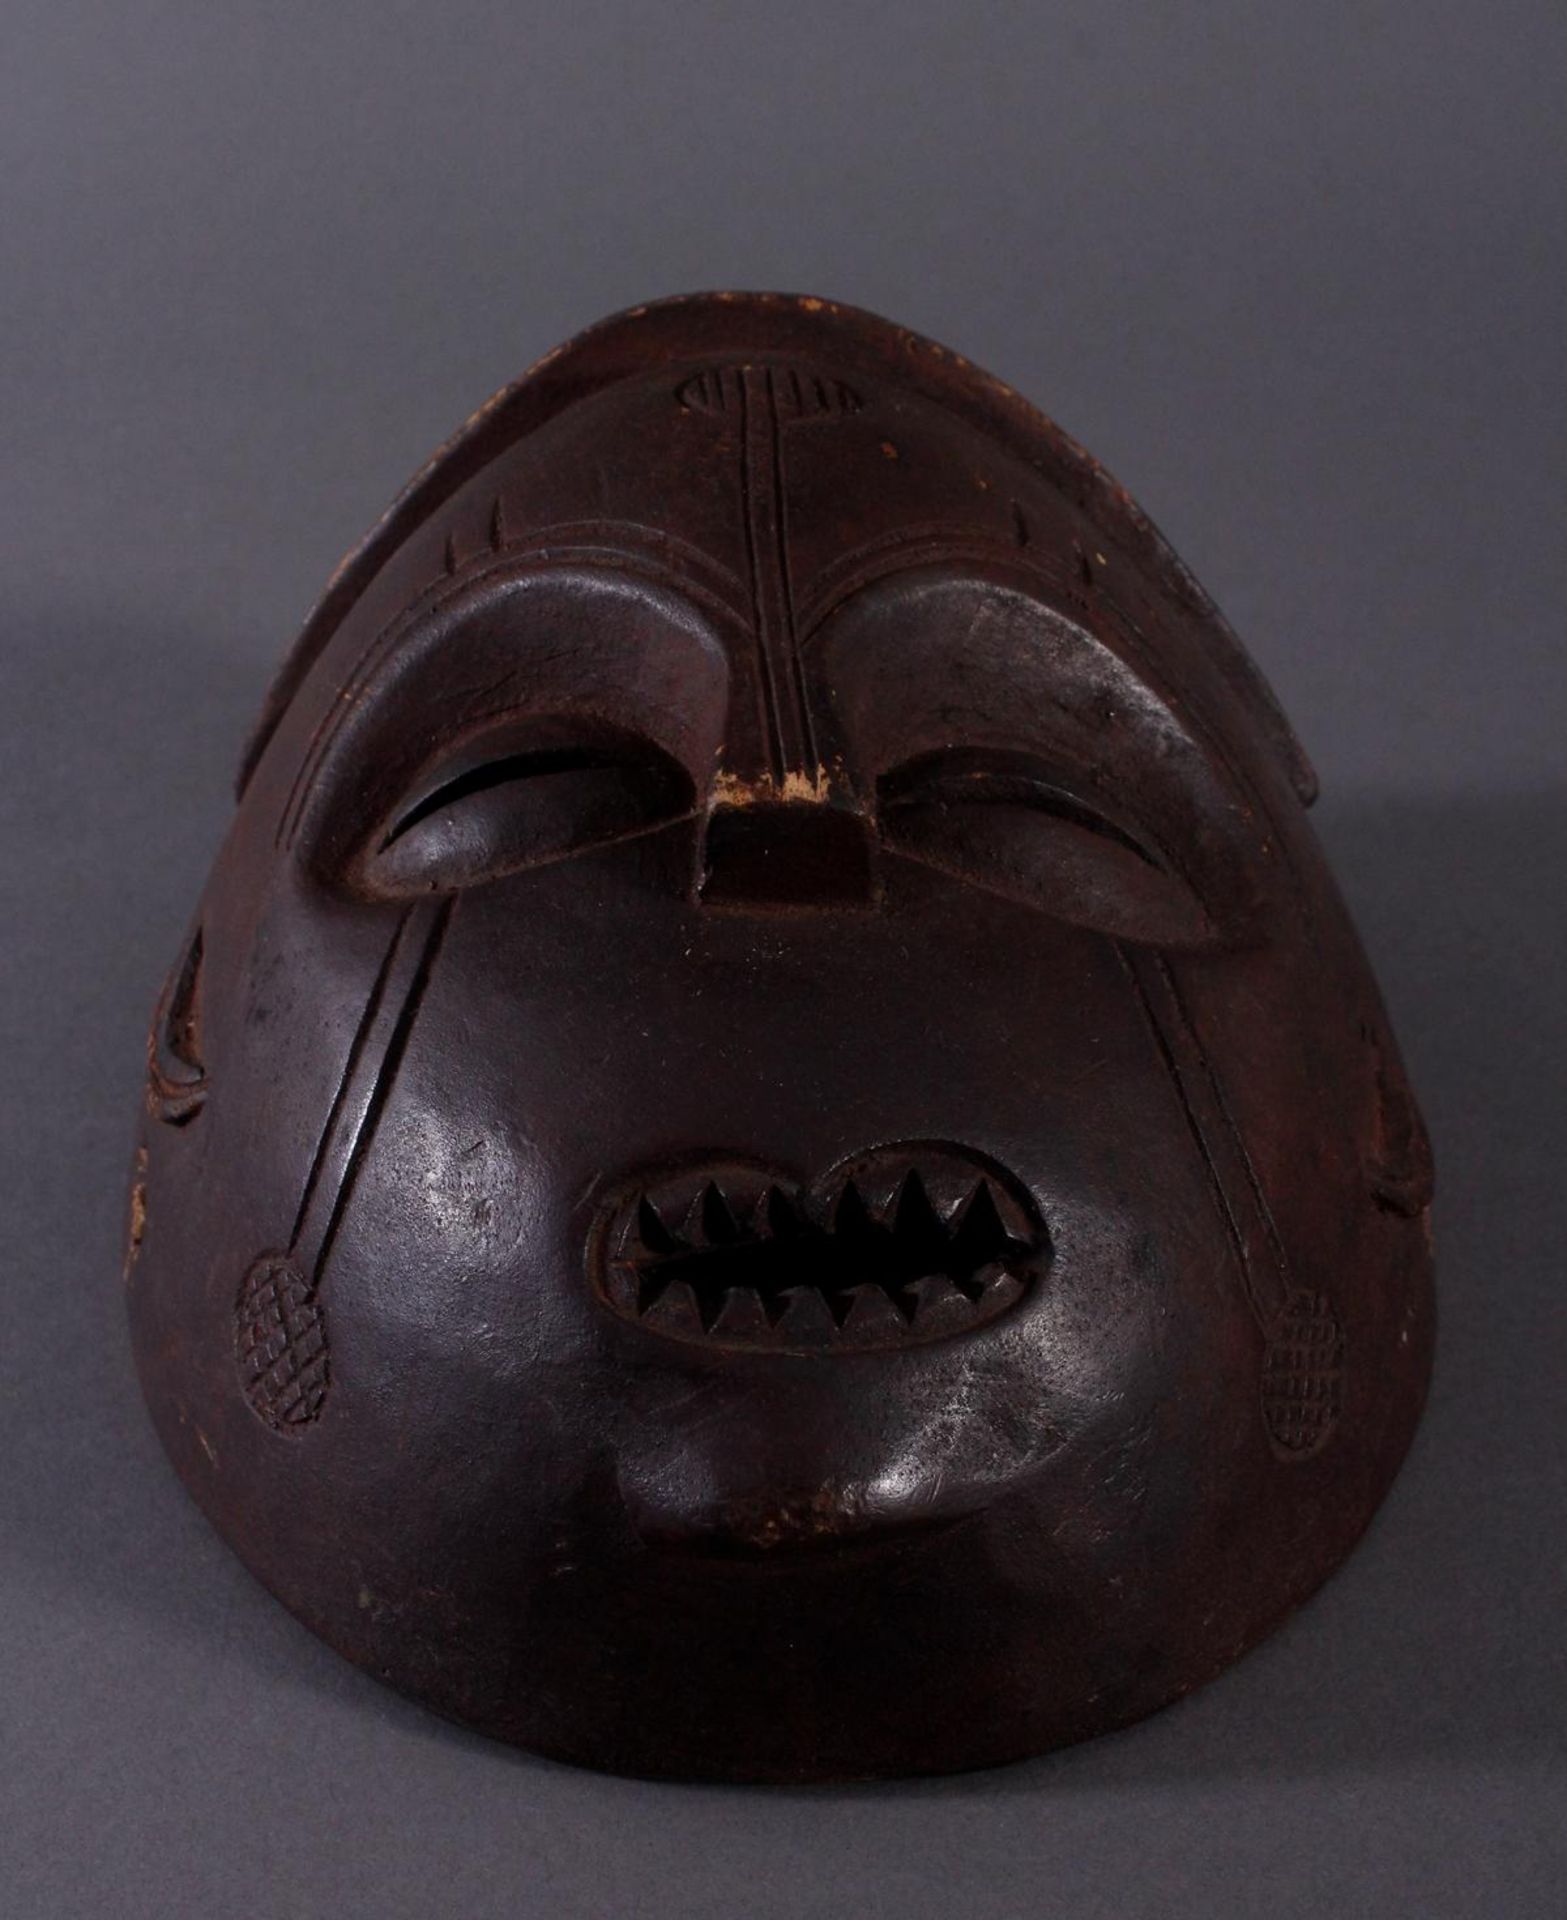 Antike Maske, Mbunda, Sambia 1. Hälfte 20. Jh.Holz geschnitzt, braune Patina, ovale Form, - Bild 4 aus 6